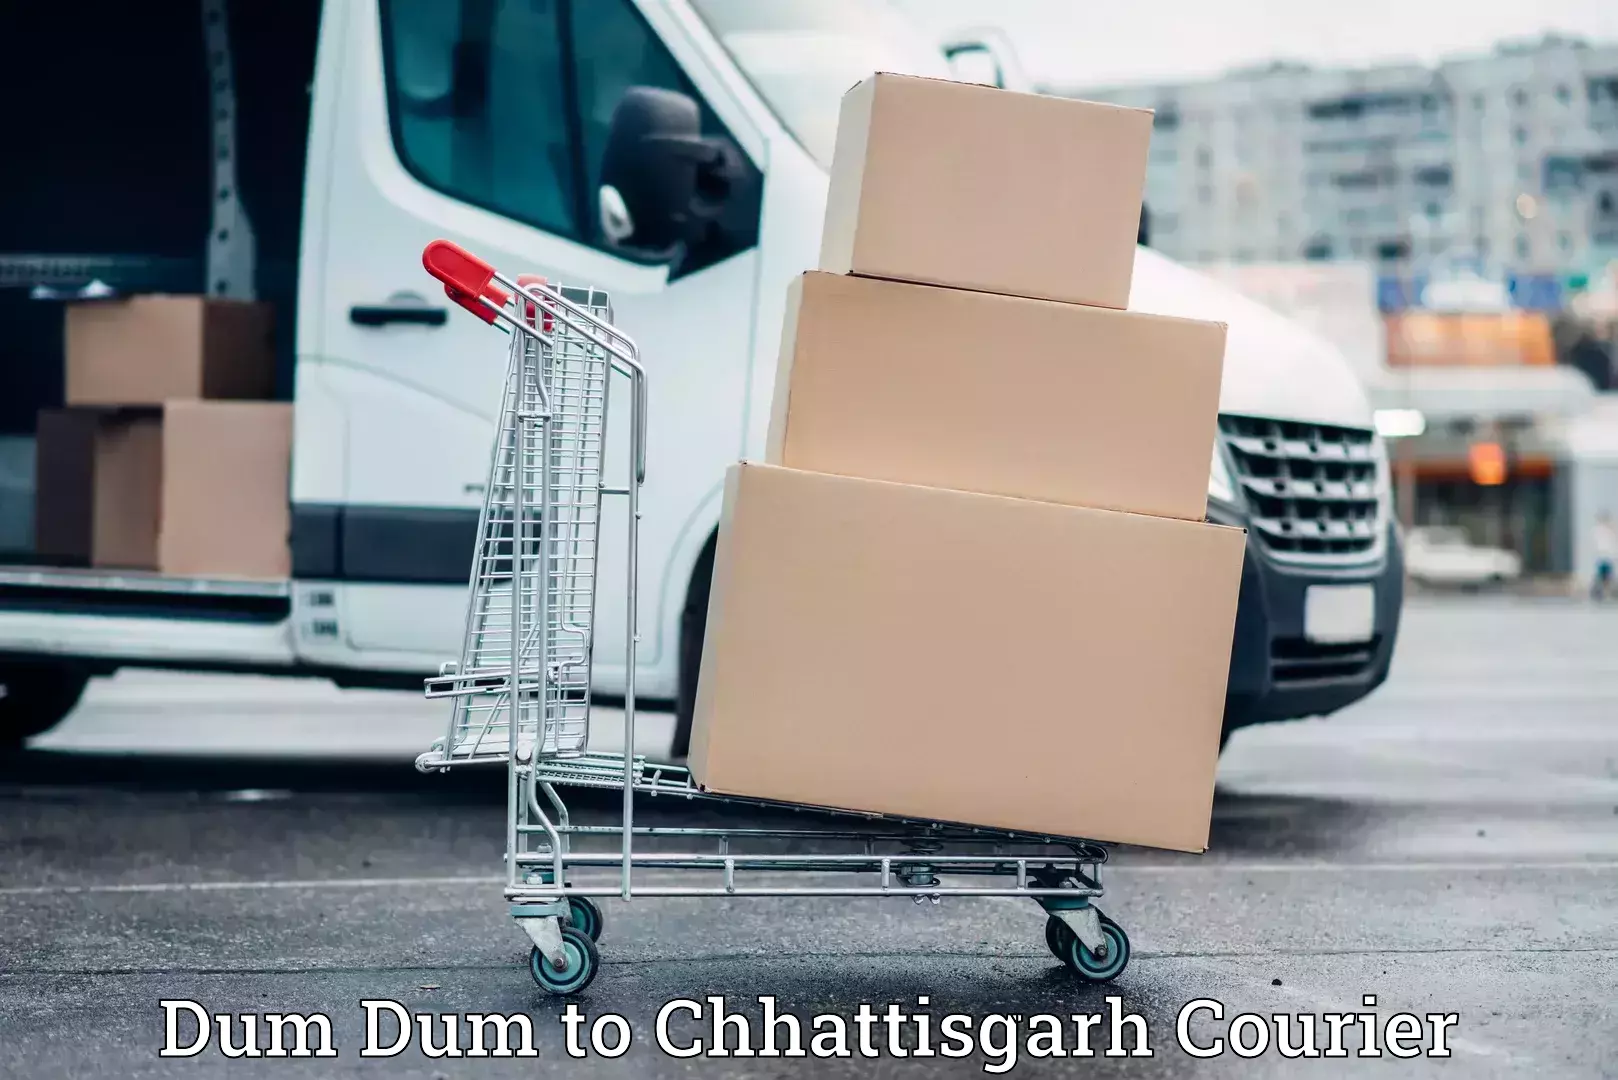 Furniture transport experts Dum Dum to Chhattisgarh